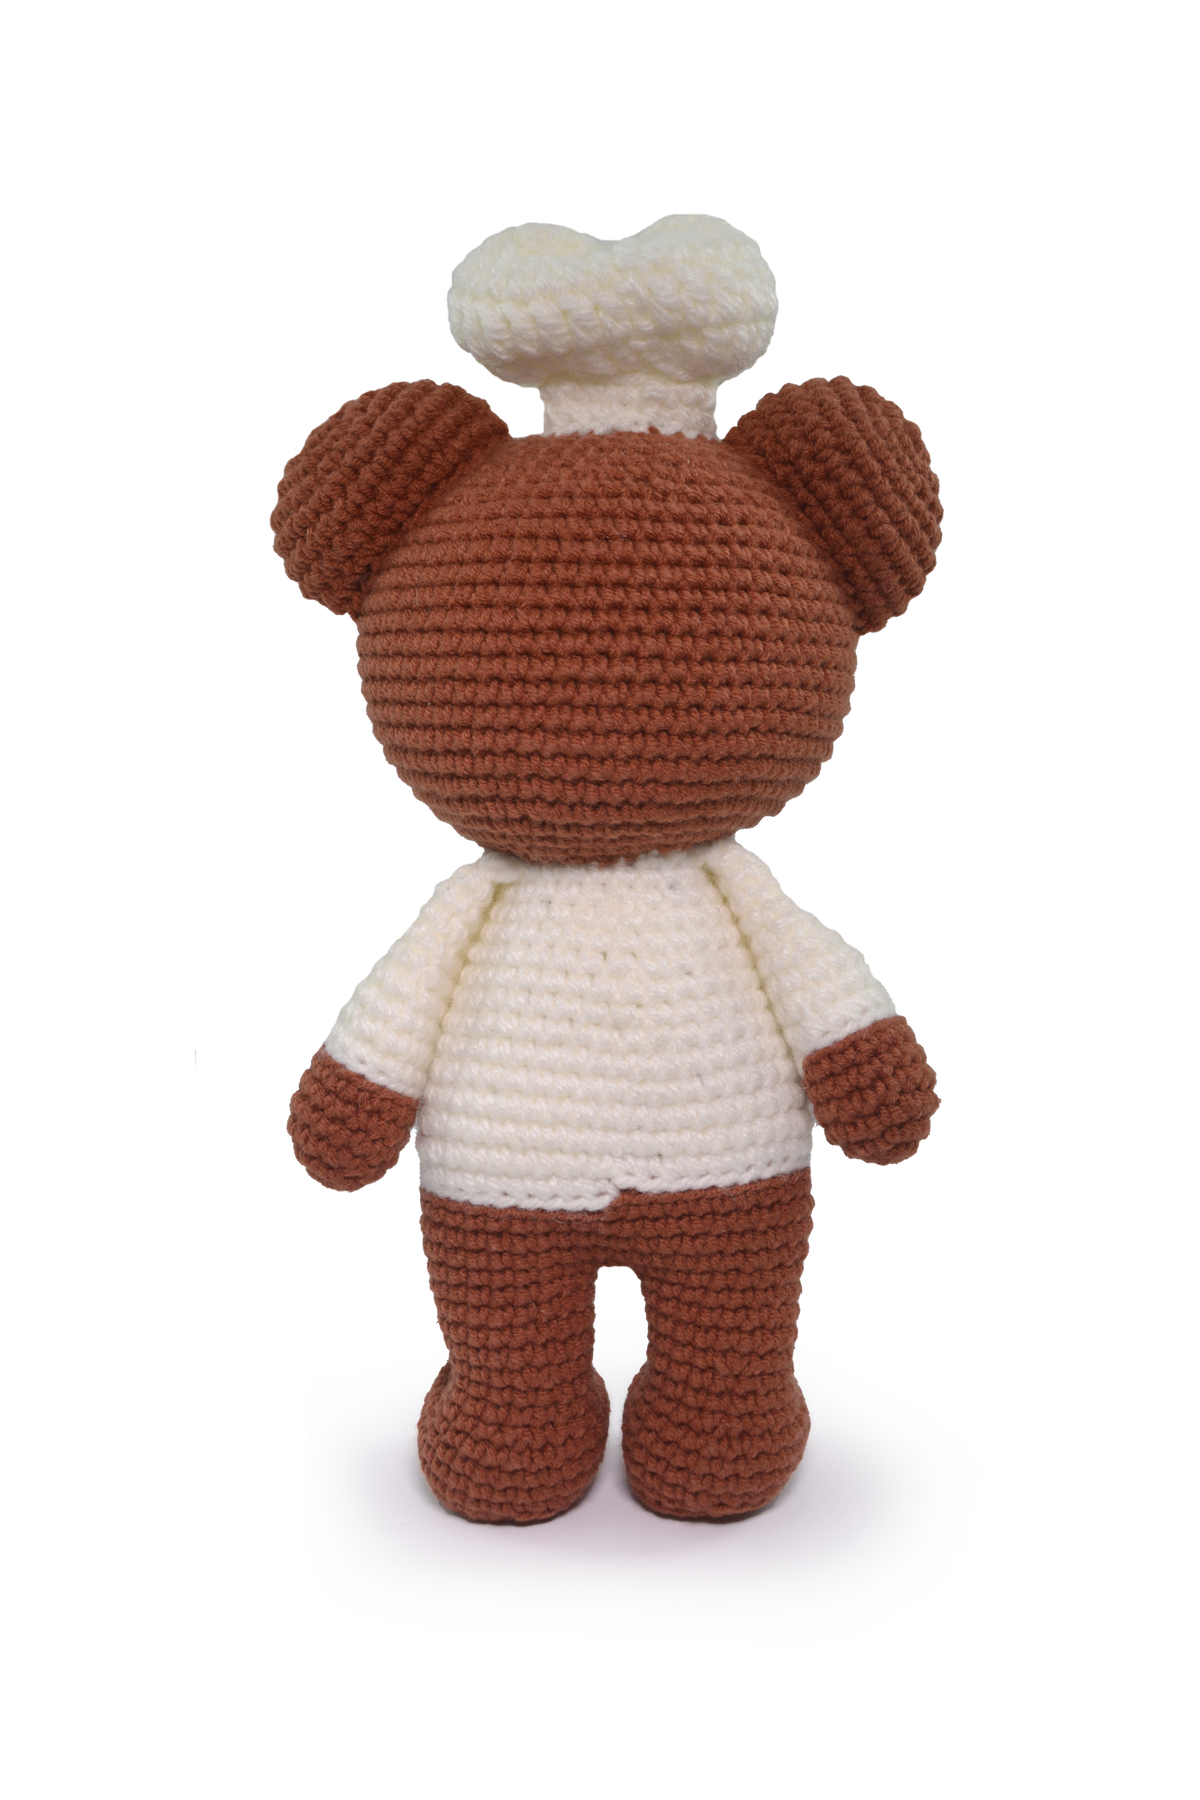 Circulo Amigurumi Cuddly Teddy Bear Kits - Knitty City